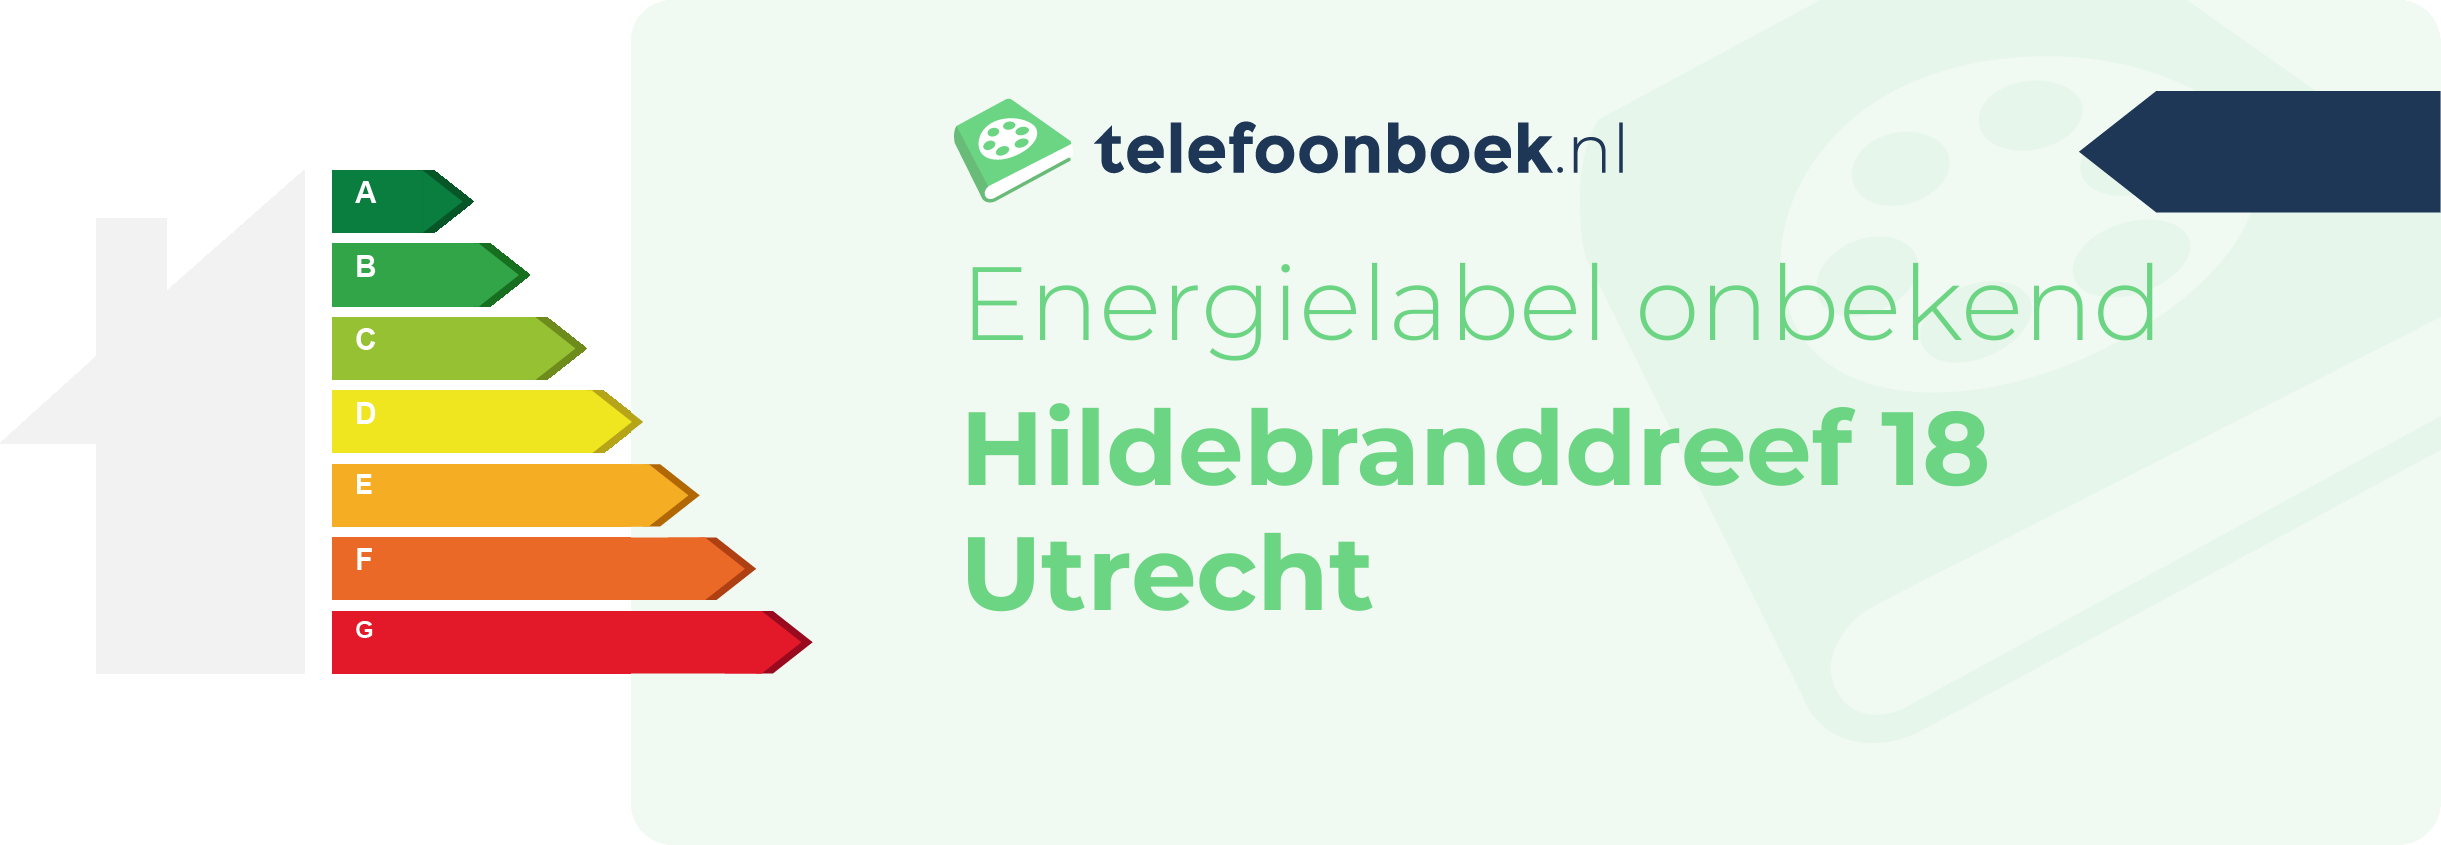 Energielabel Hildebranddreef 18 Utrecht